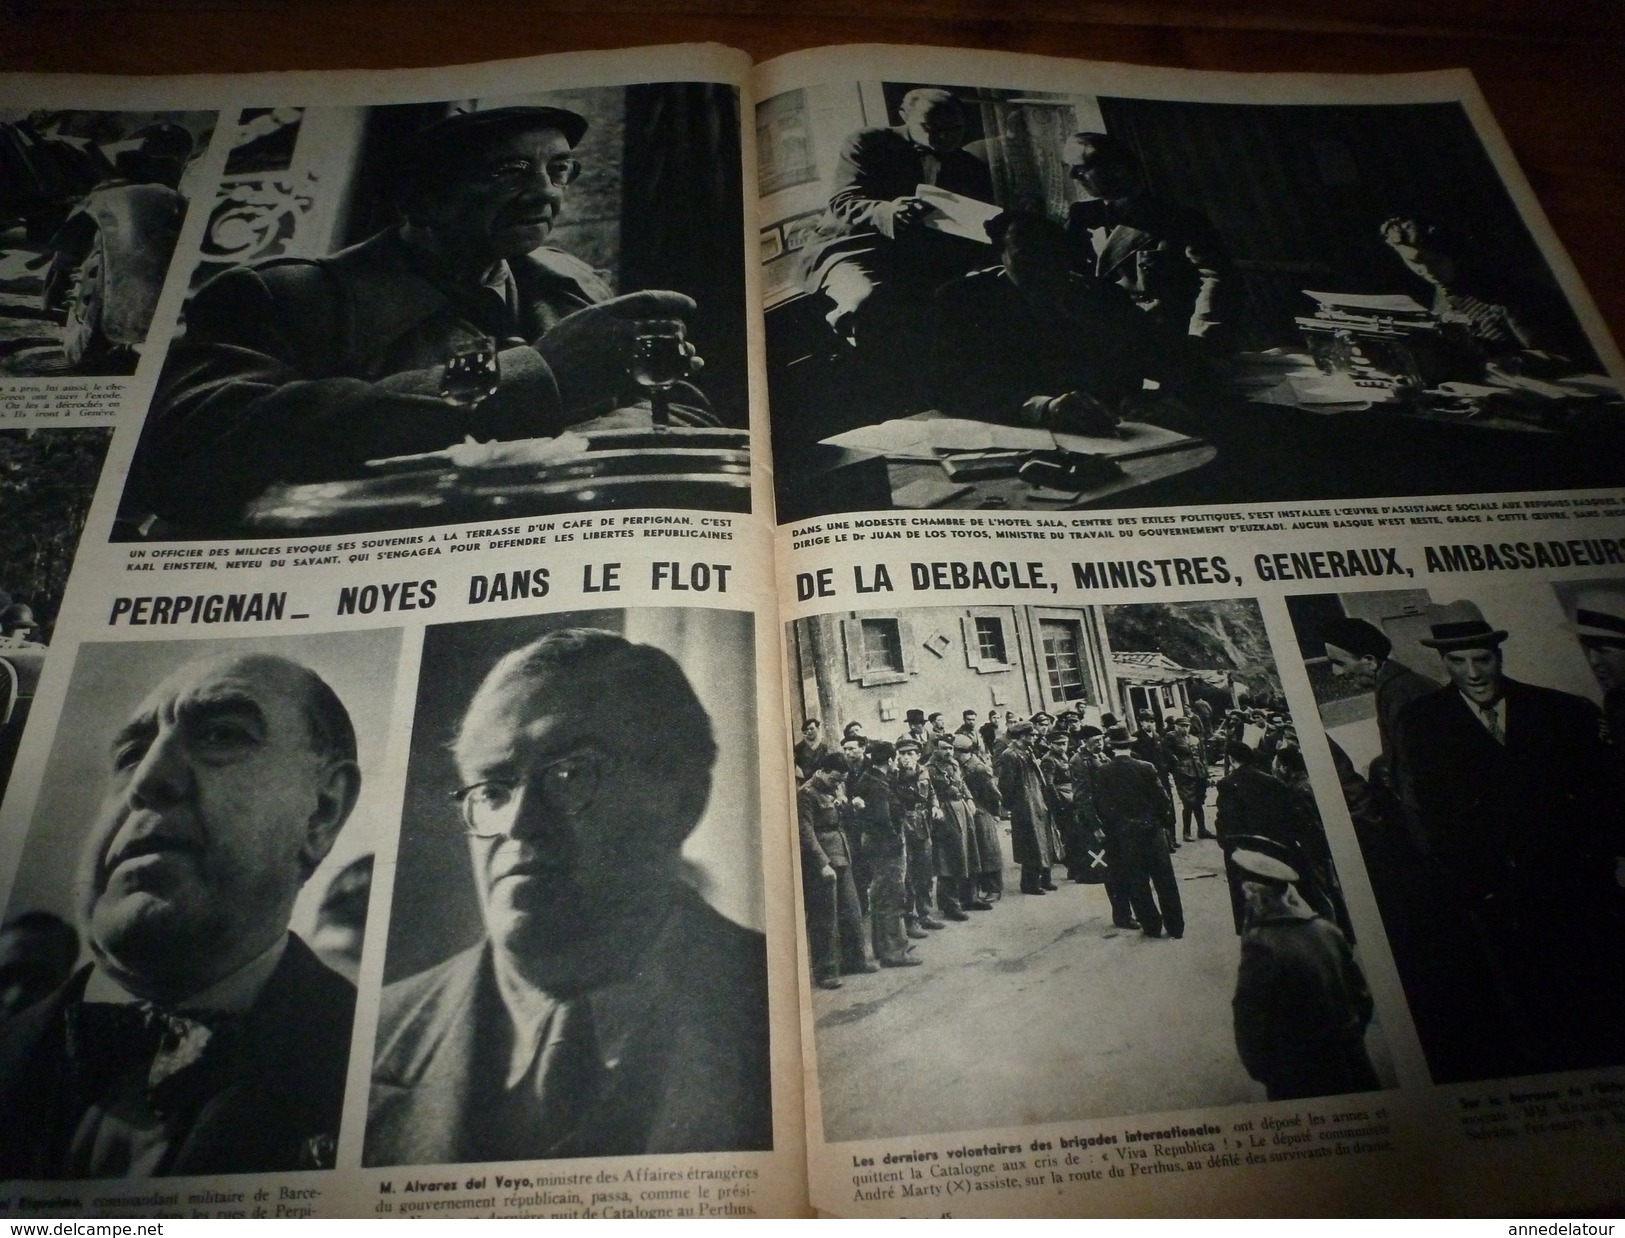 1939 MATCH: Guerre civile Espagne +++(Banyolas,Division Navarre,Juanita la milicienne);PAPE mort;Le CHIFFRE;Perpignan